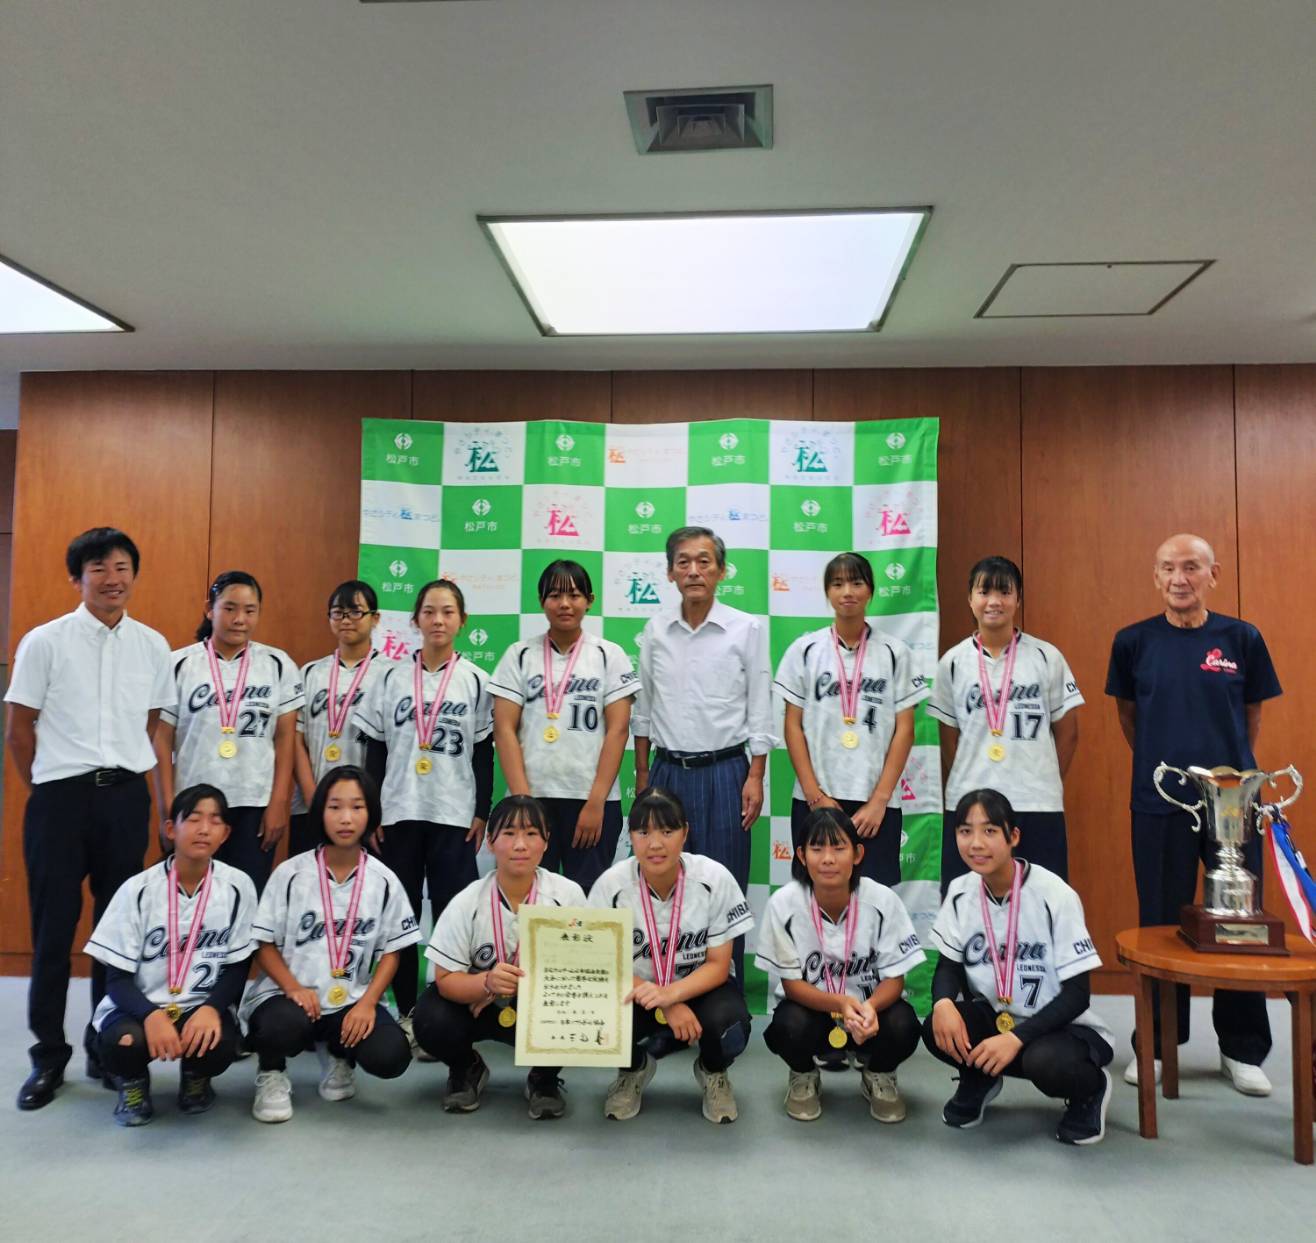 レオネッサ カリーナSC 松戸市長表敬訪問2023年第23回 全日本中学生女子ソフトボール大会で優勝